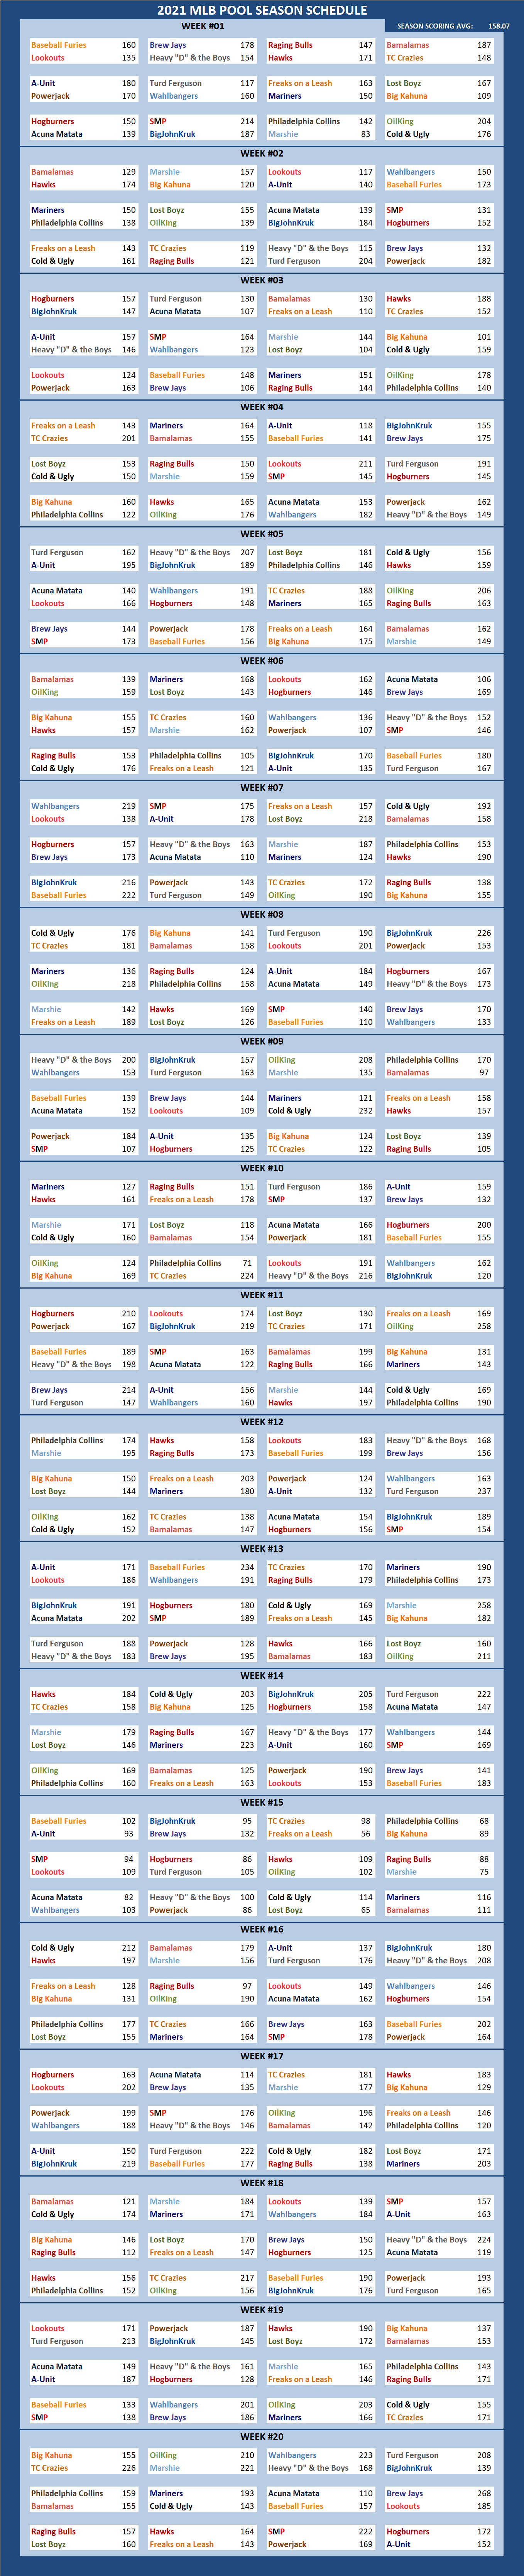 2021 Major League Baseball Pool Season Schedule